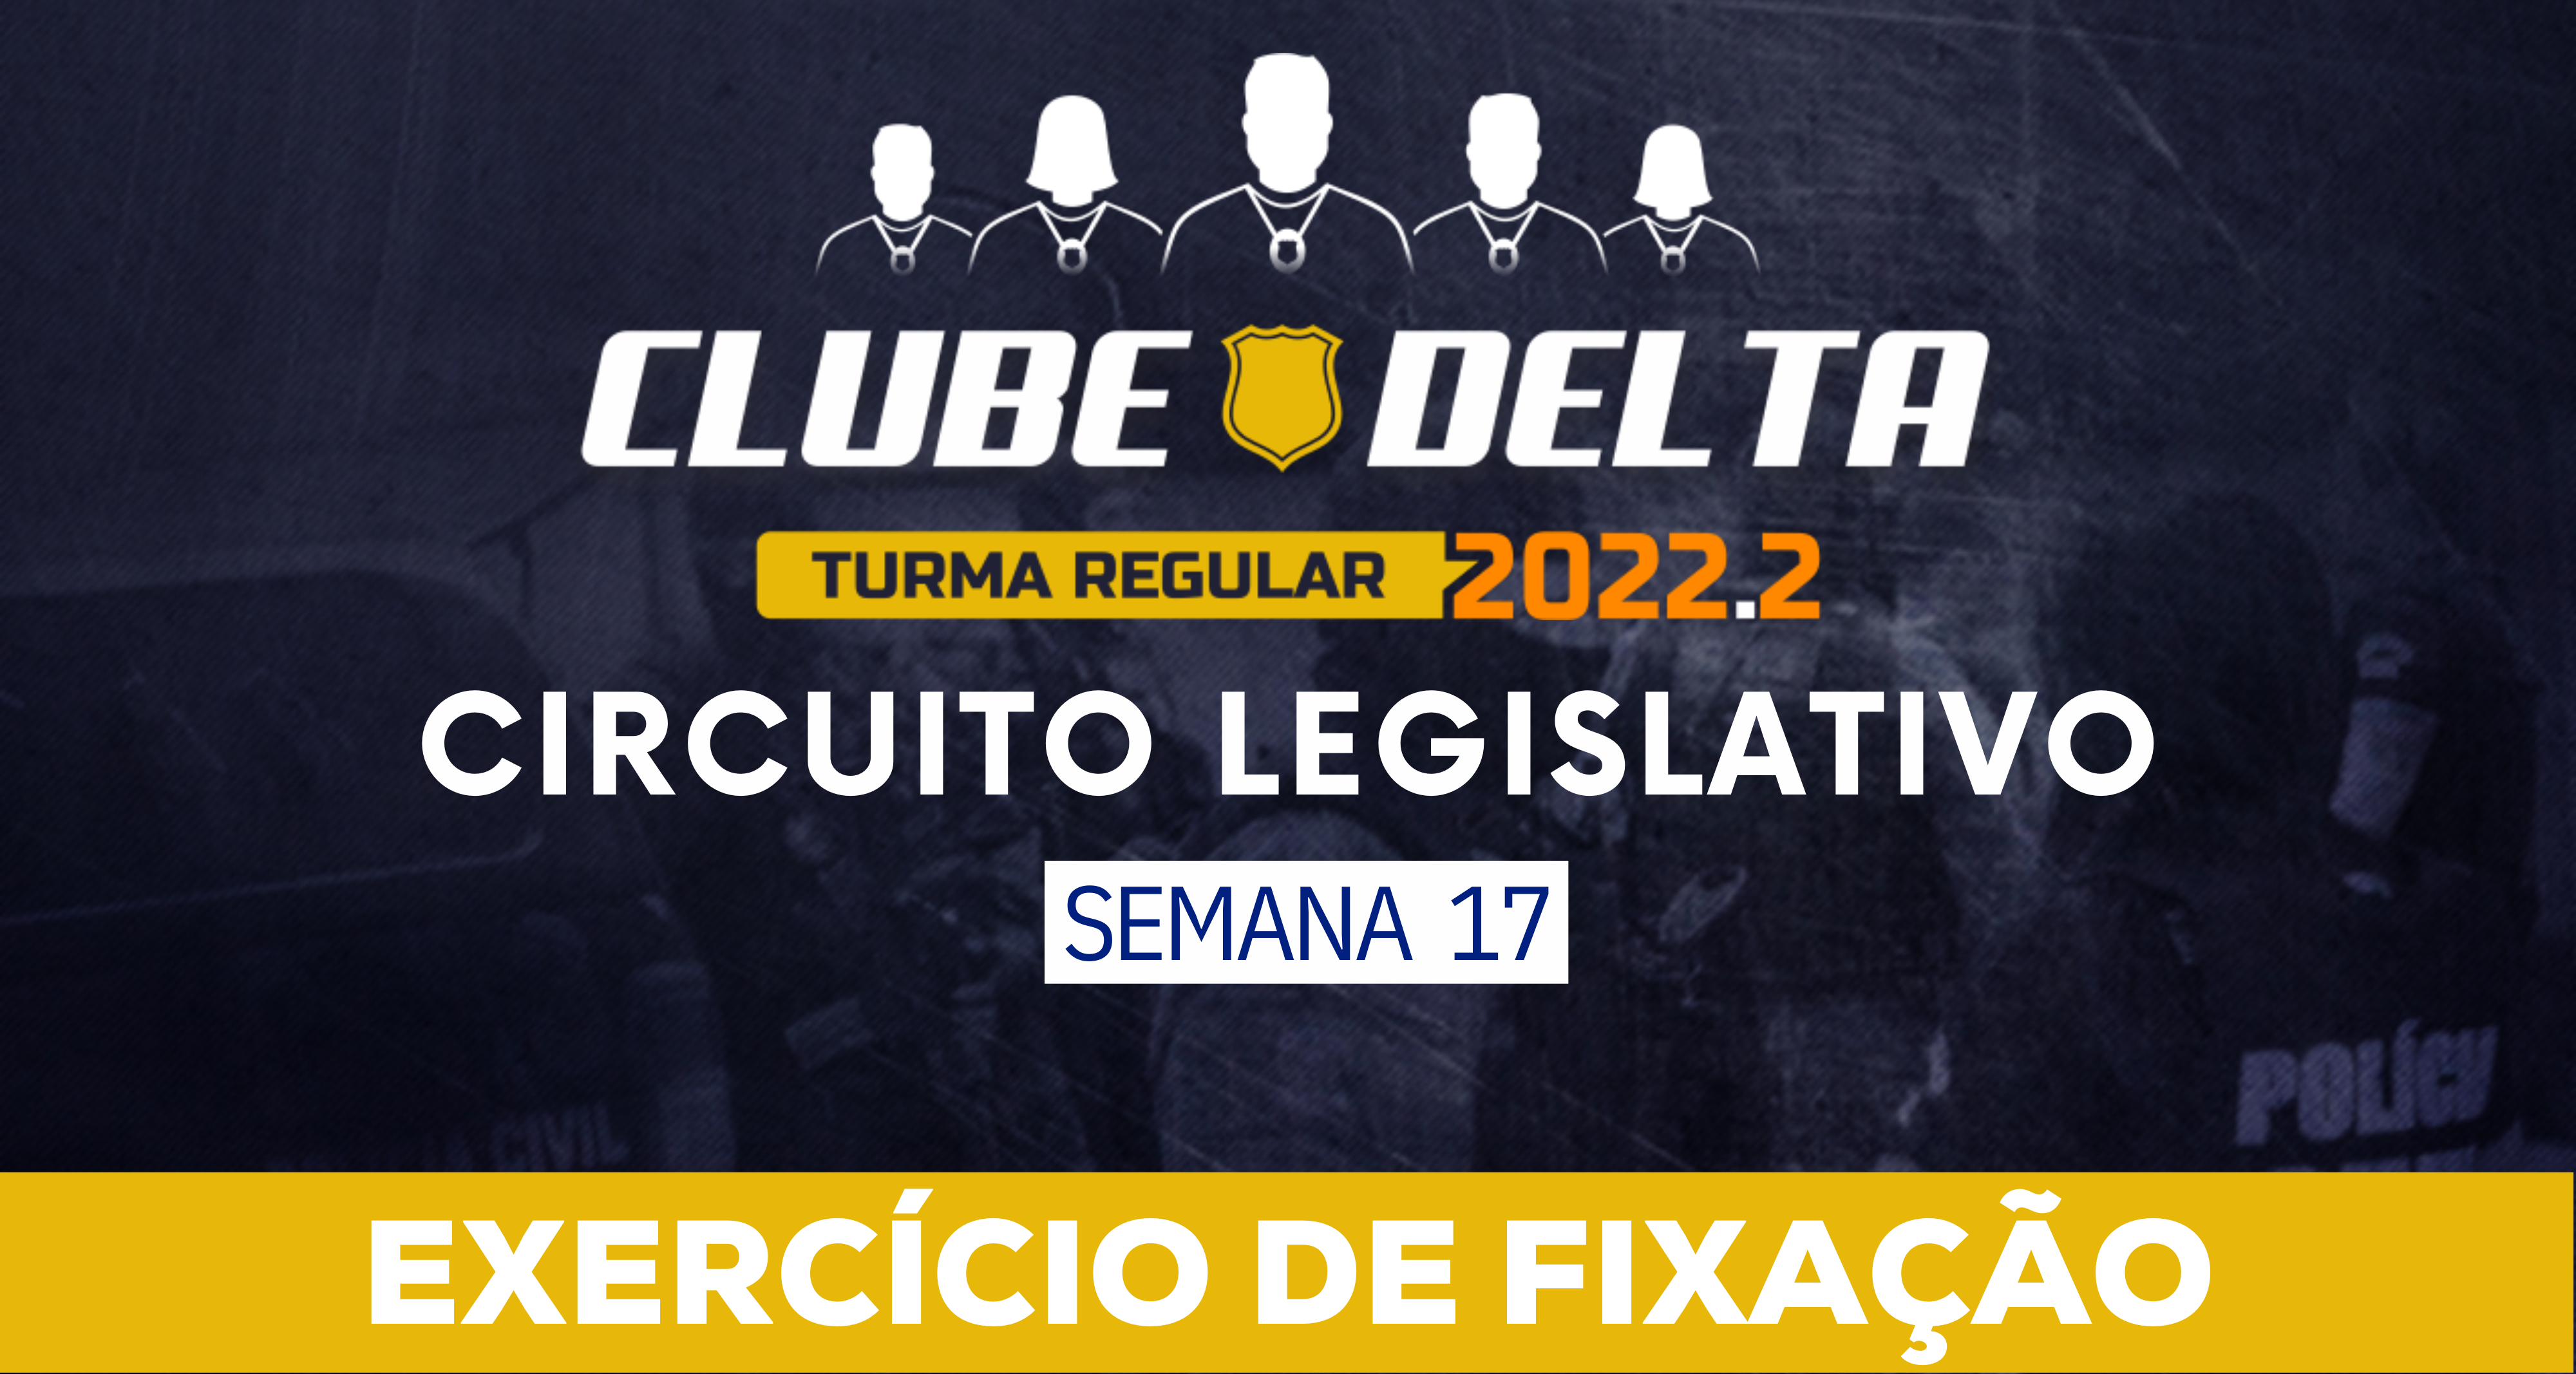 Circuito Legislativo 2022.2 (Clube Delta - Semana 17)